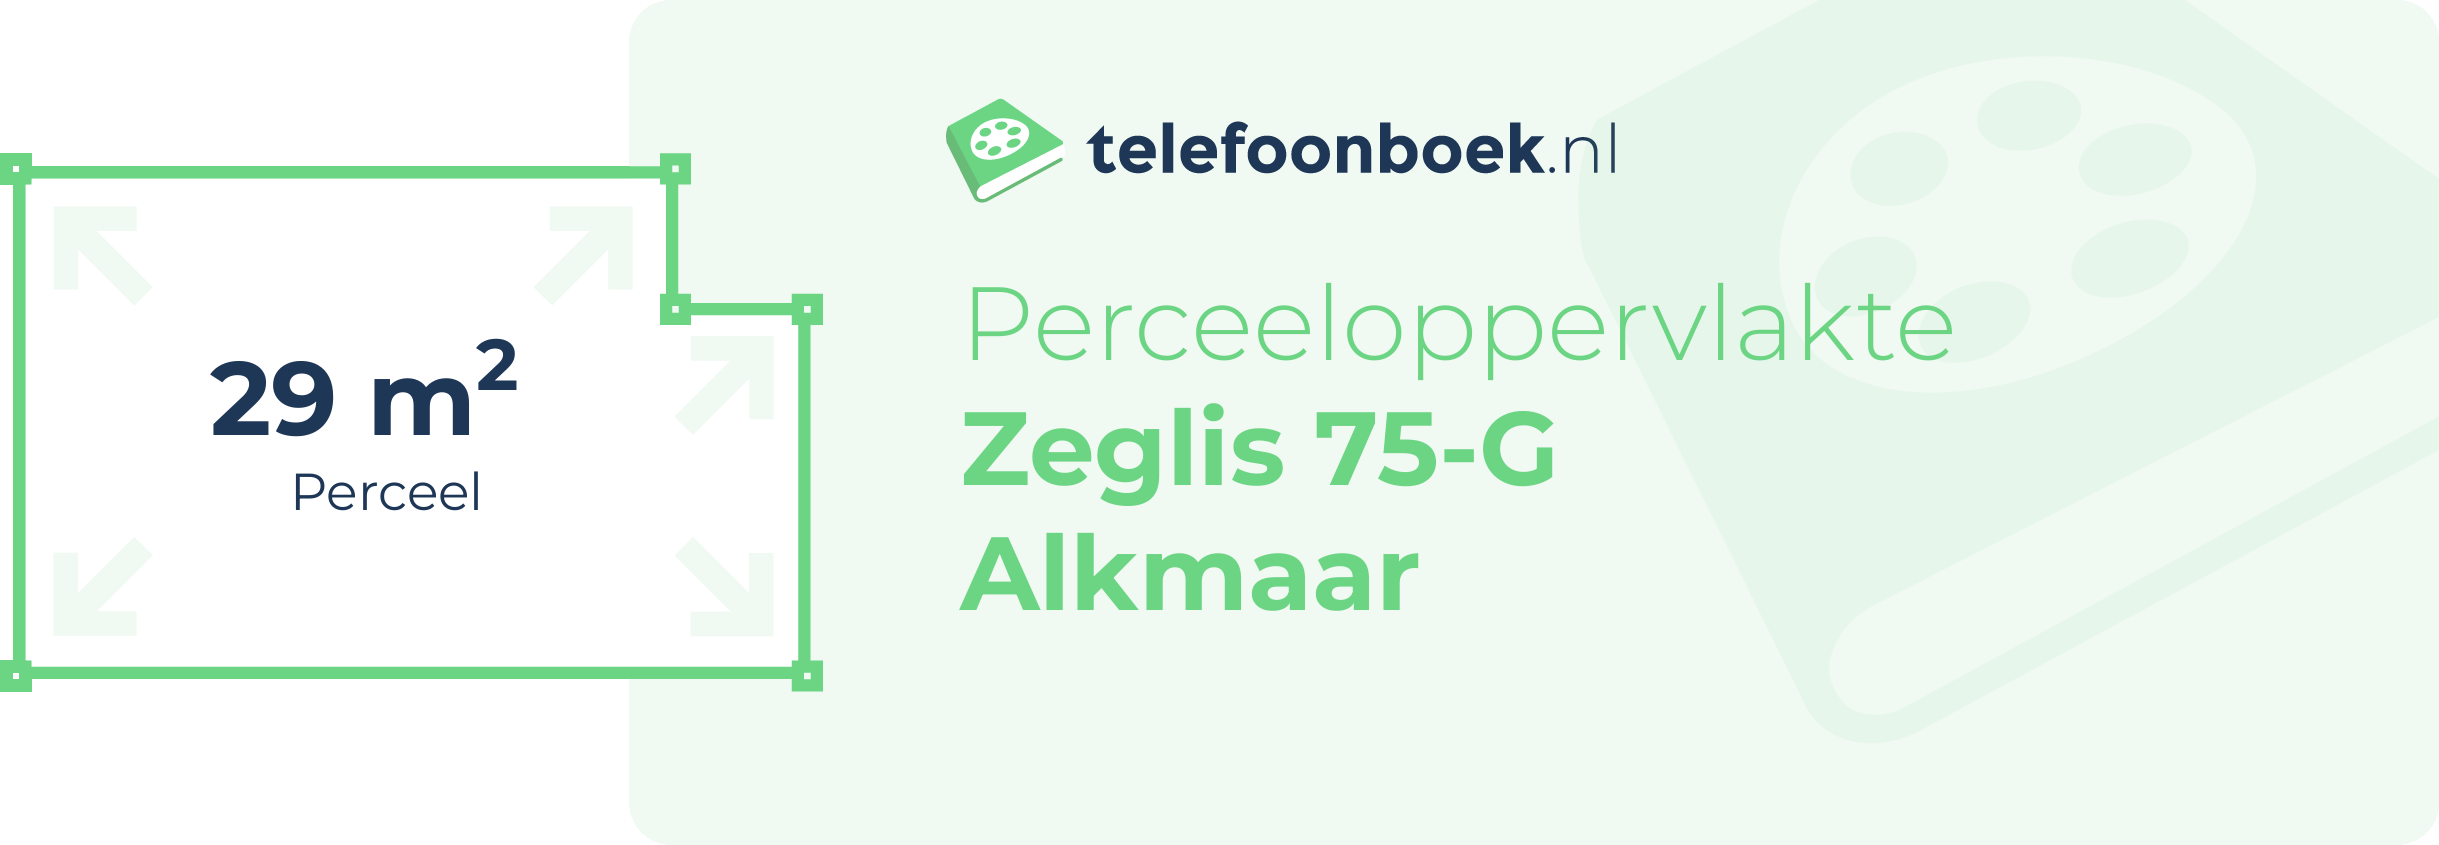 Perceeloppervlakte Zeglis 75-G Alkmaar